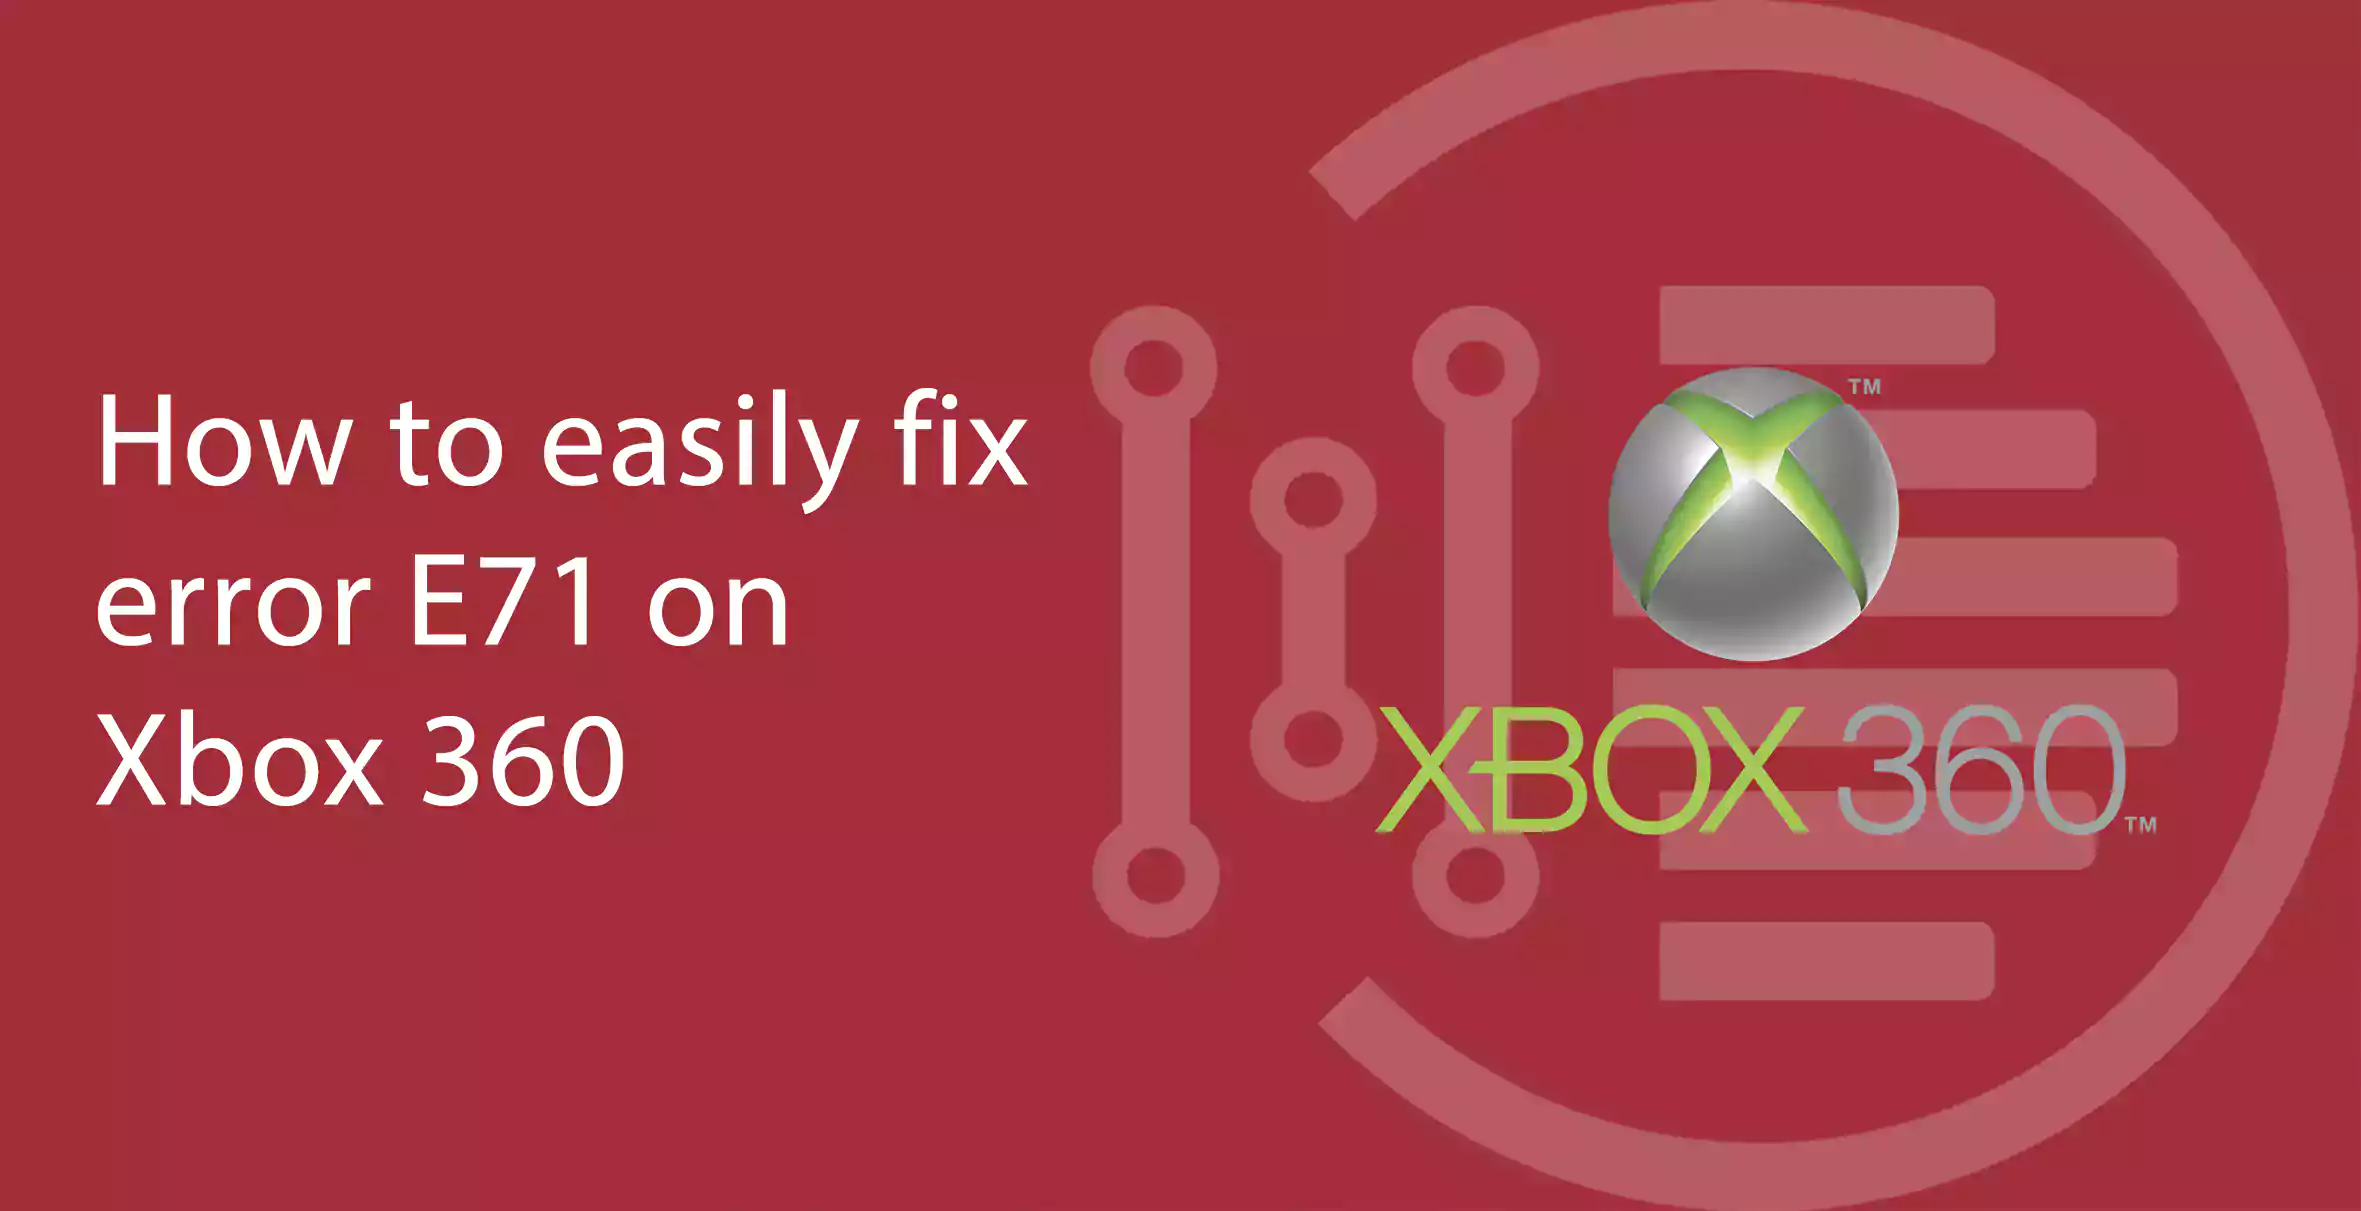 How to easily fix error E71 on Xbox 360